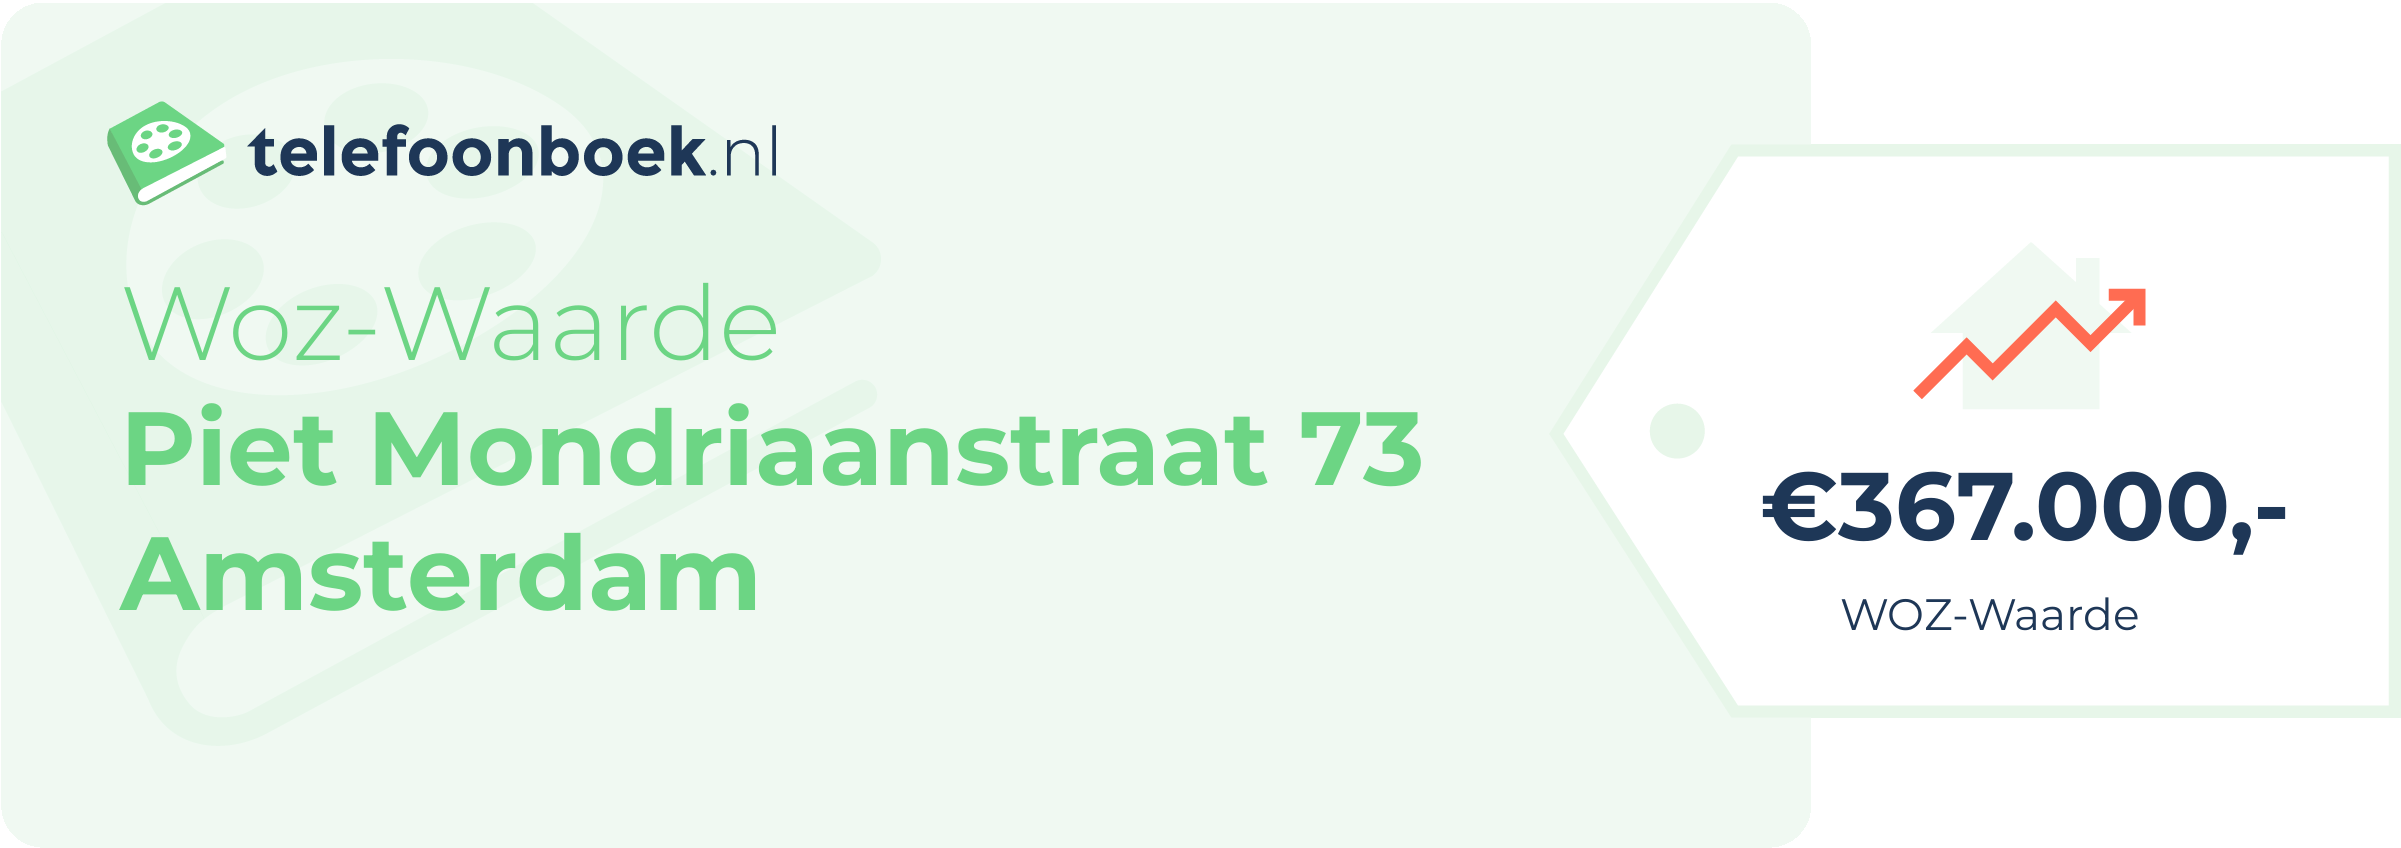 WOZ-waarde Piet Mondriaanstraat 73 Amsterdam